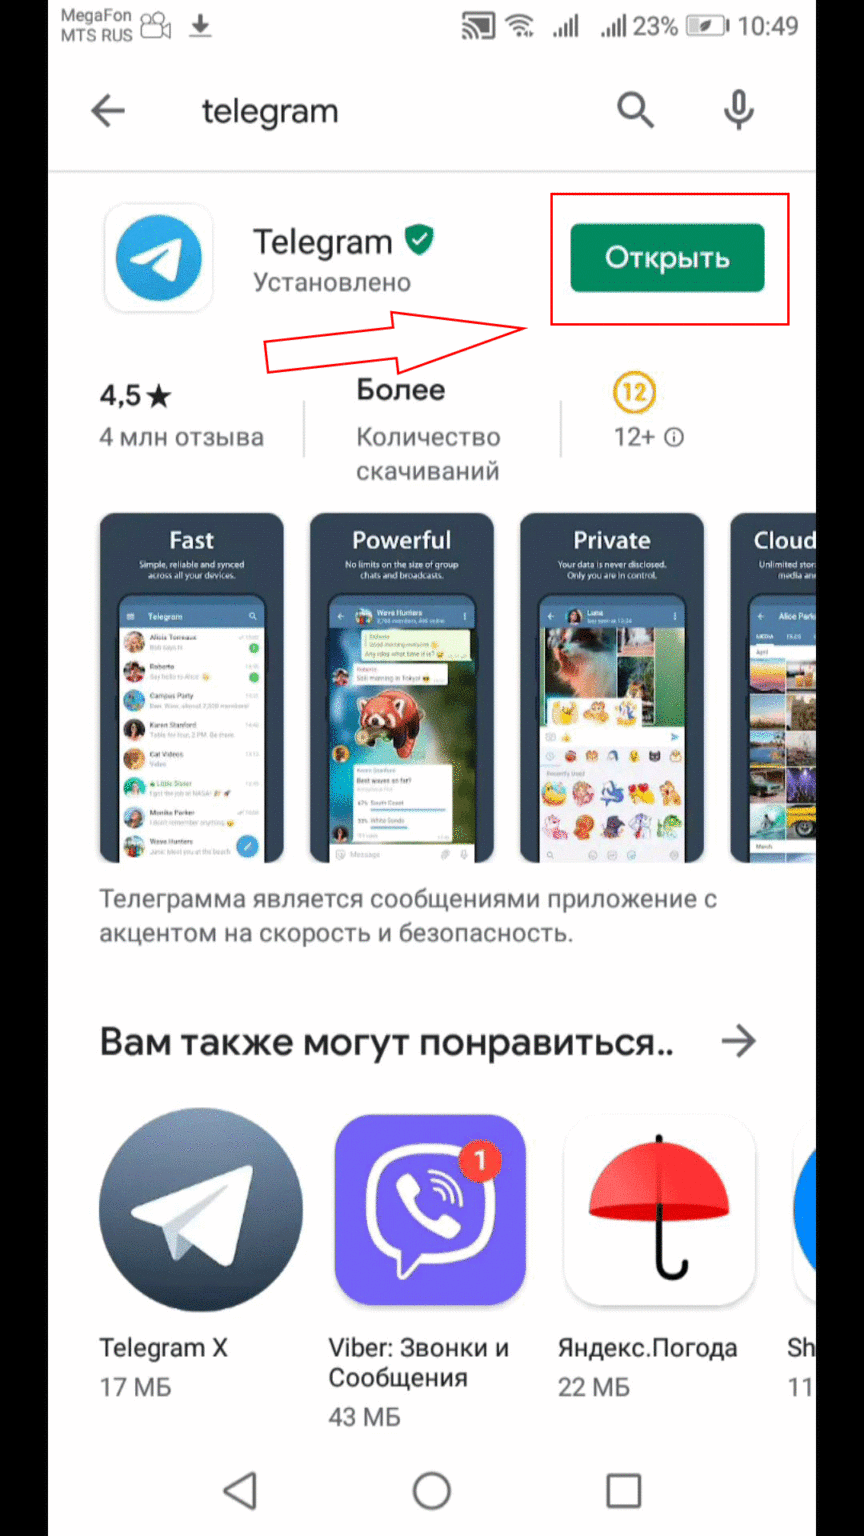 Телеграмм скачать бесплатно на телефон на русском языке без вирусов приложение андроид русском языке фото 104